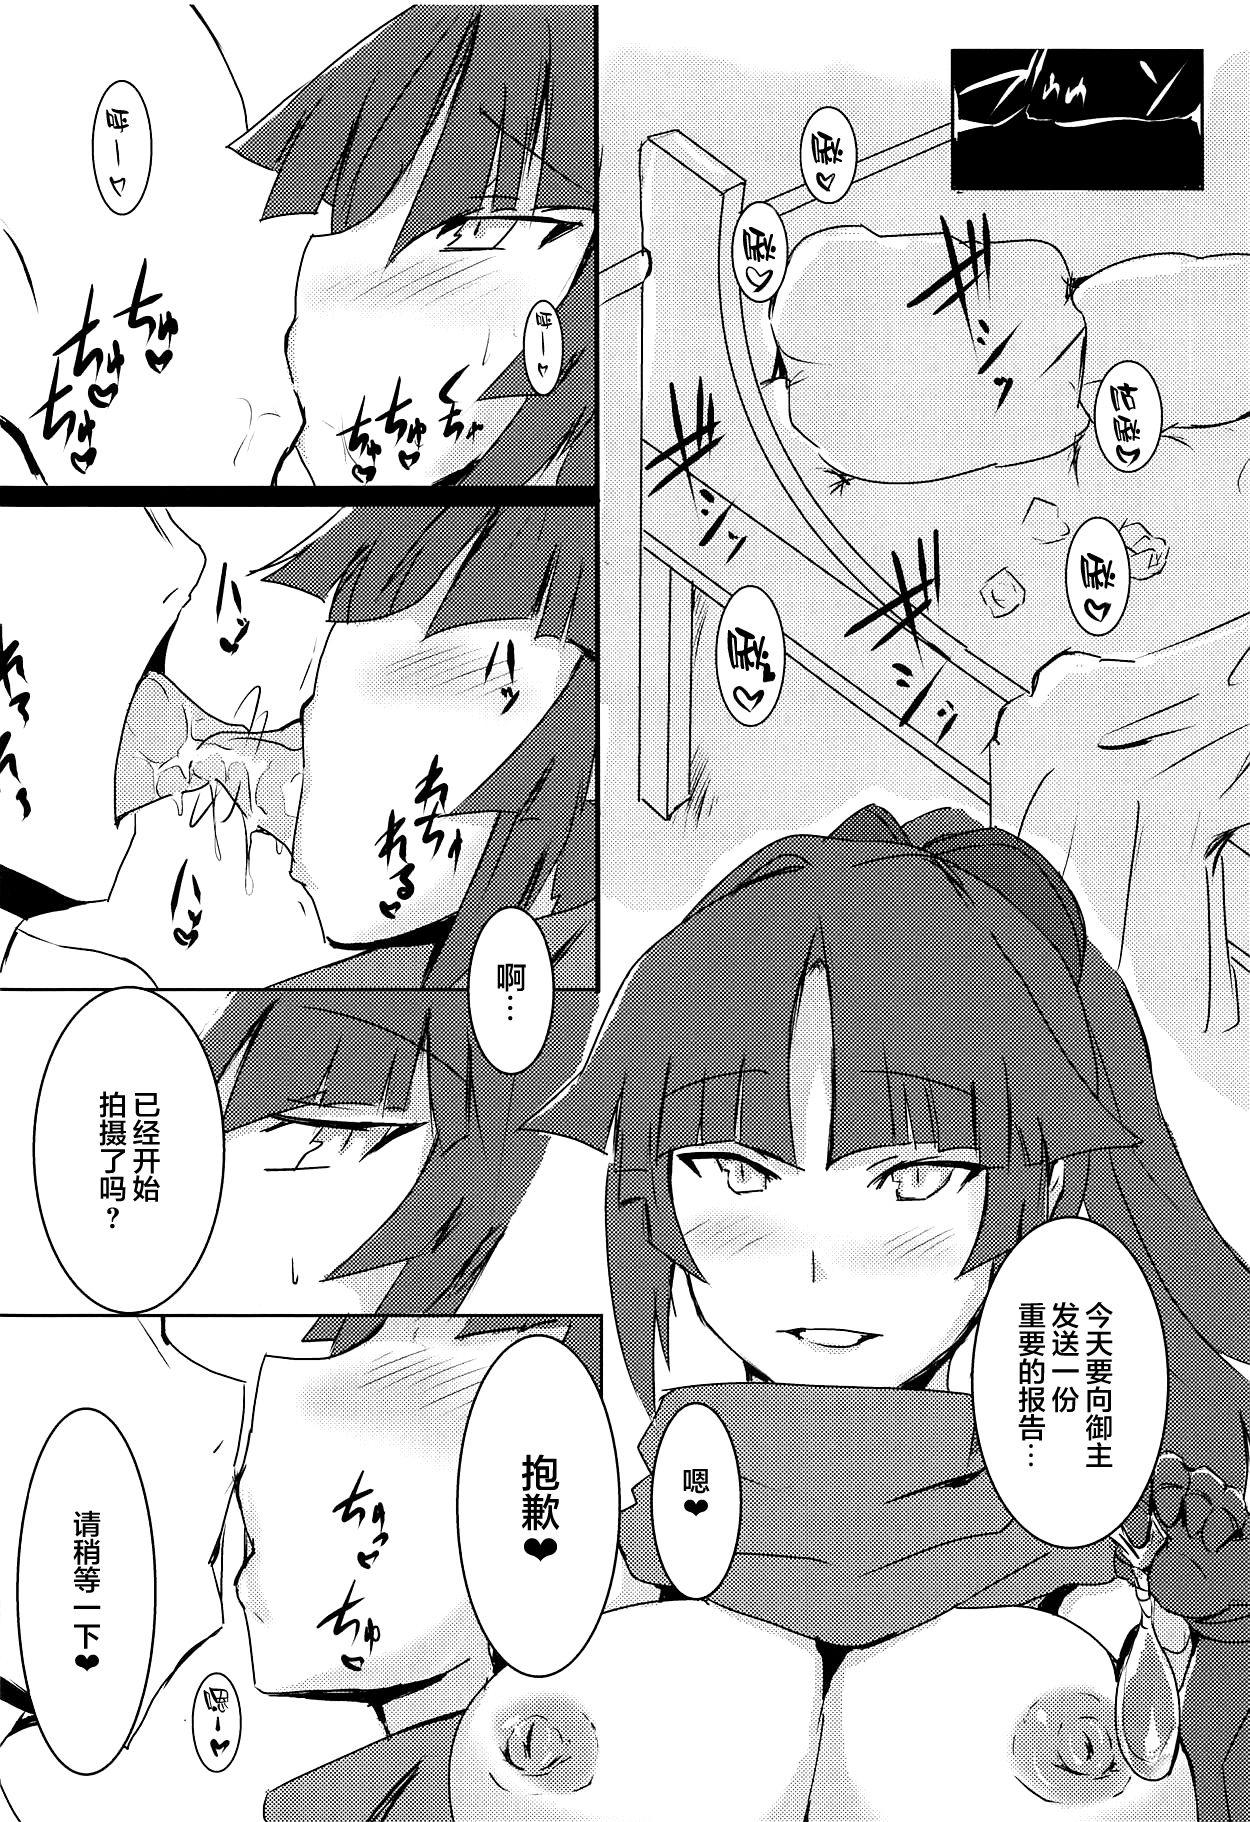 Secretary Kizuna 10. ☆4 Saba Itadakimasu - Fate grand order Tranny - Page 4